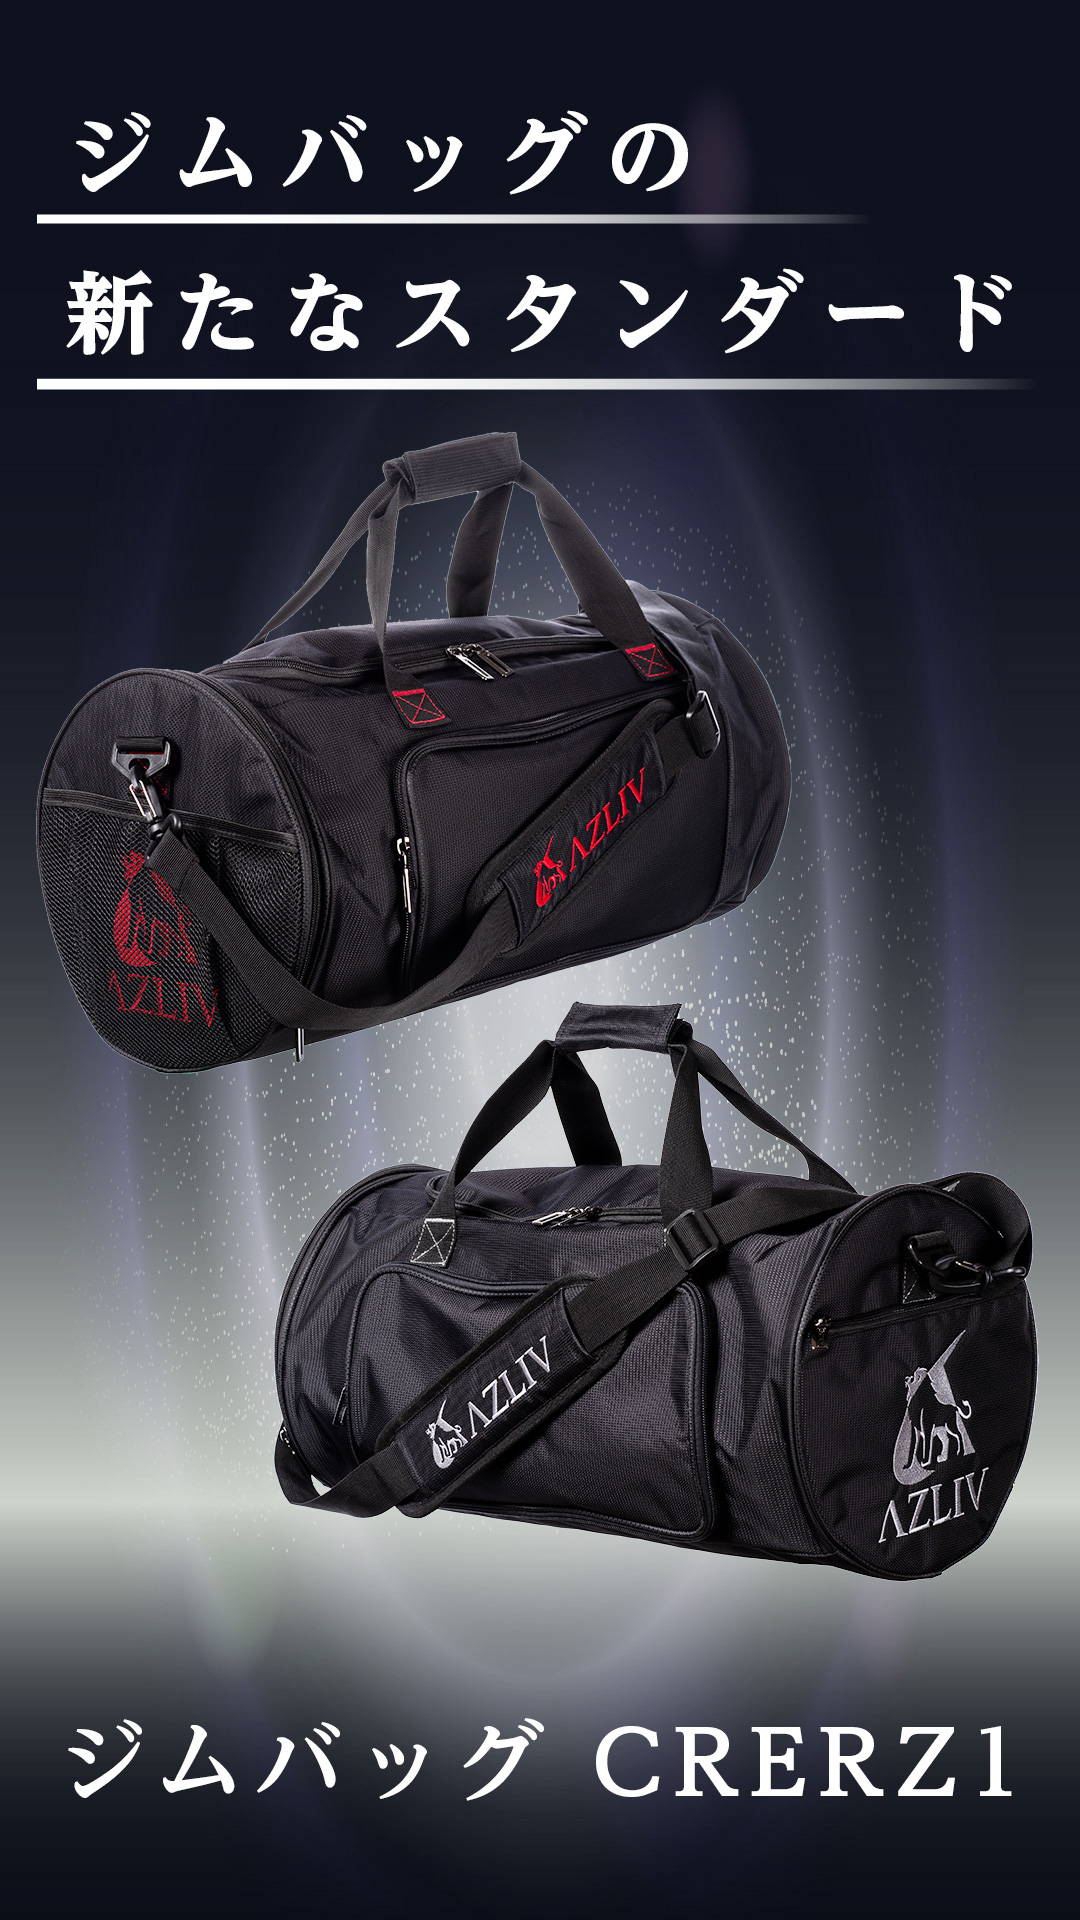 AZLIV (アズリブ) ジムバッグ CREWZ1 クルーズワン ボストンバッグ ダッフルバッグ スポーツバッグ 多機能 大容量 シューズ収